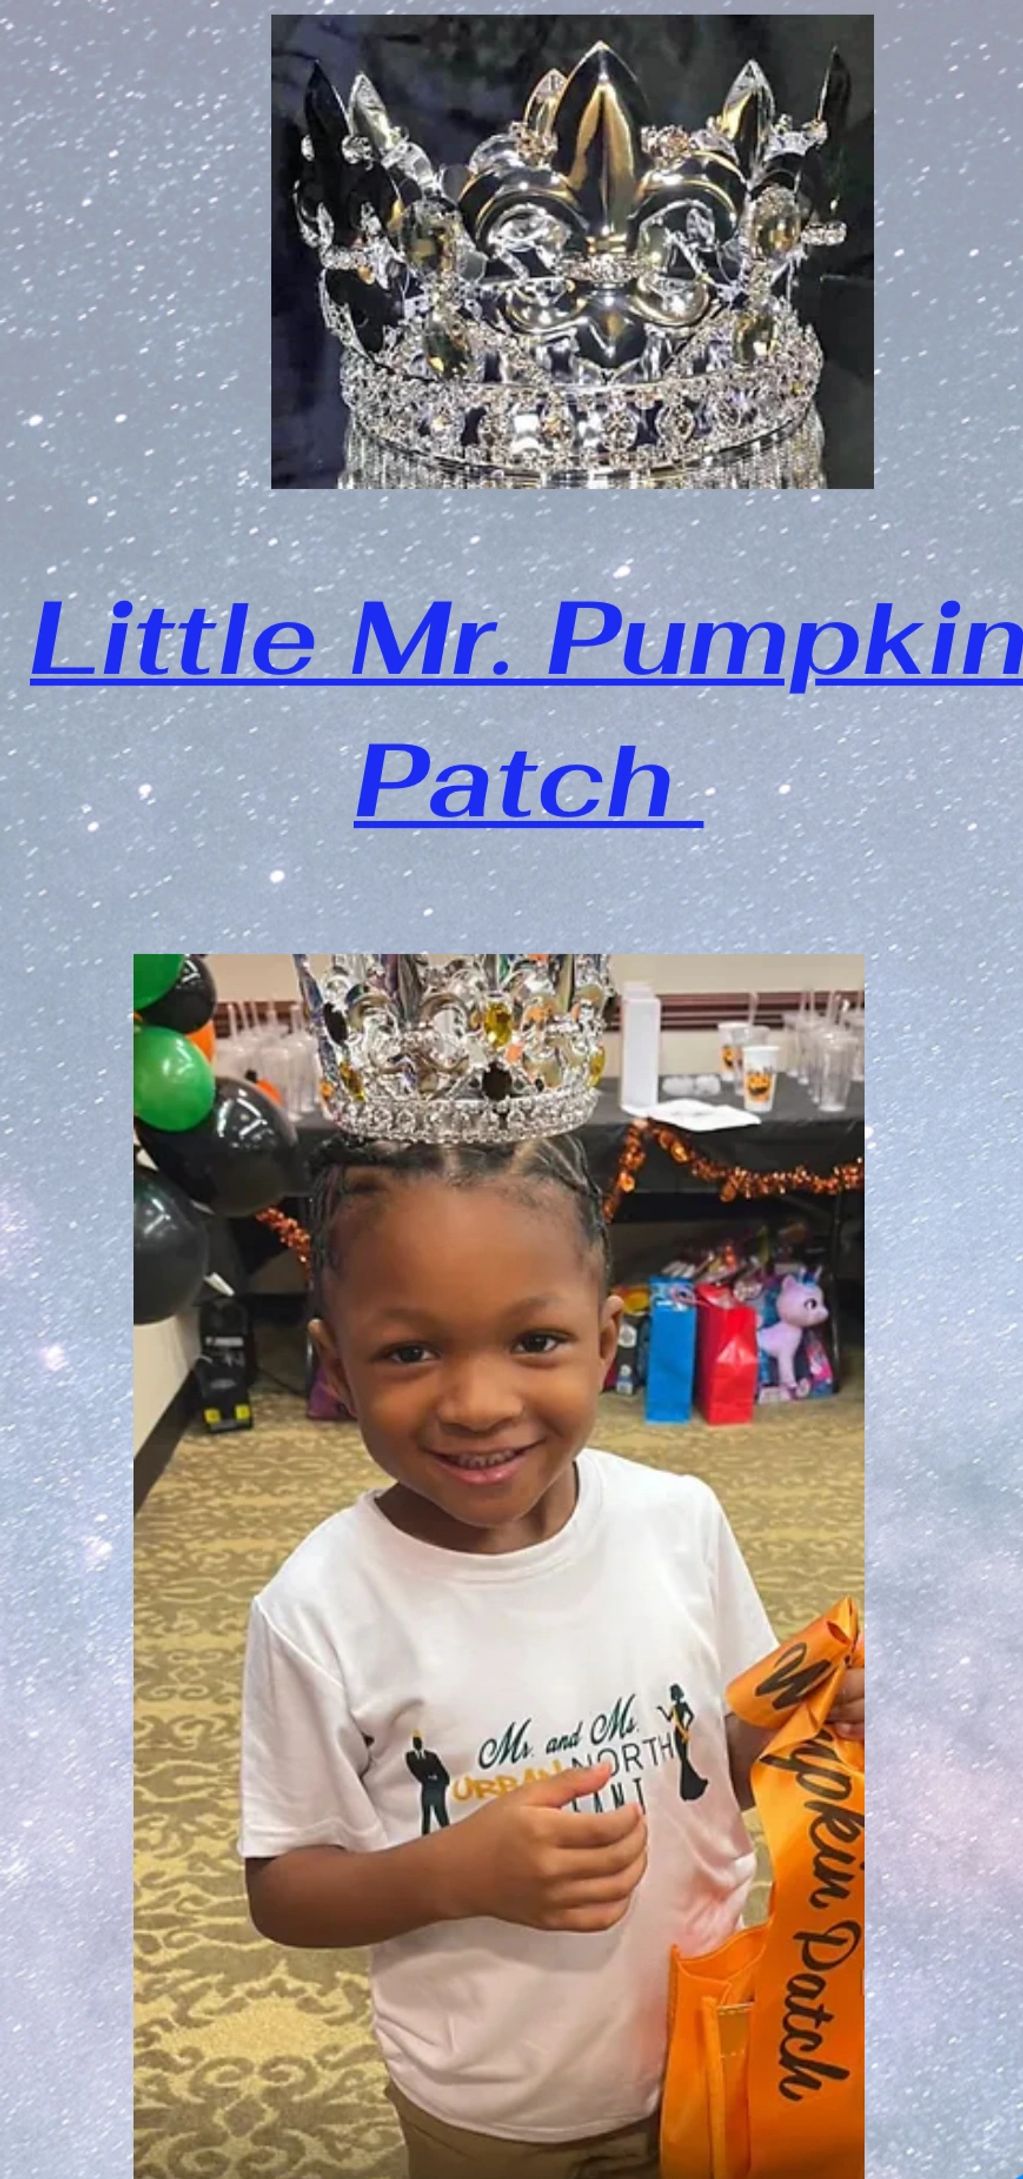 Little Mr pumpkin patch winner Jaz 